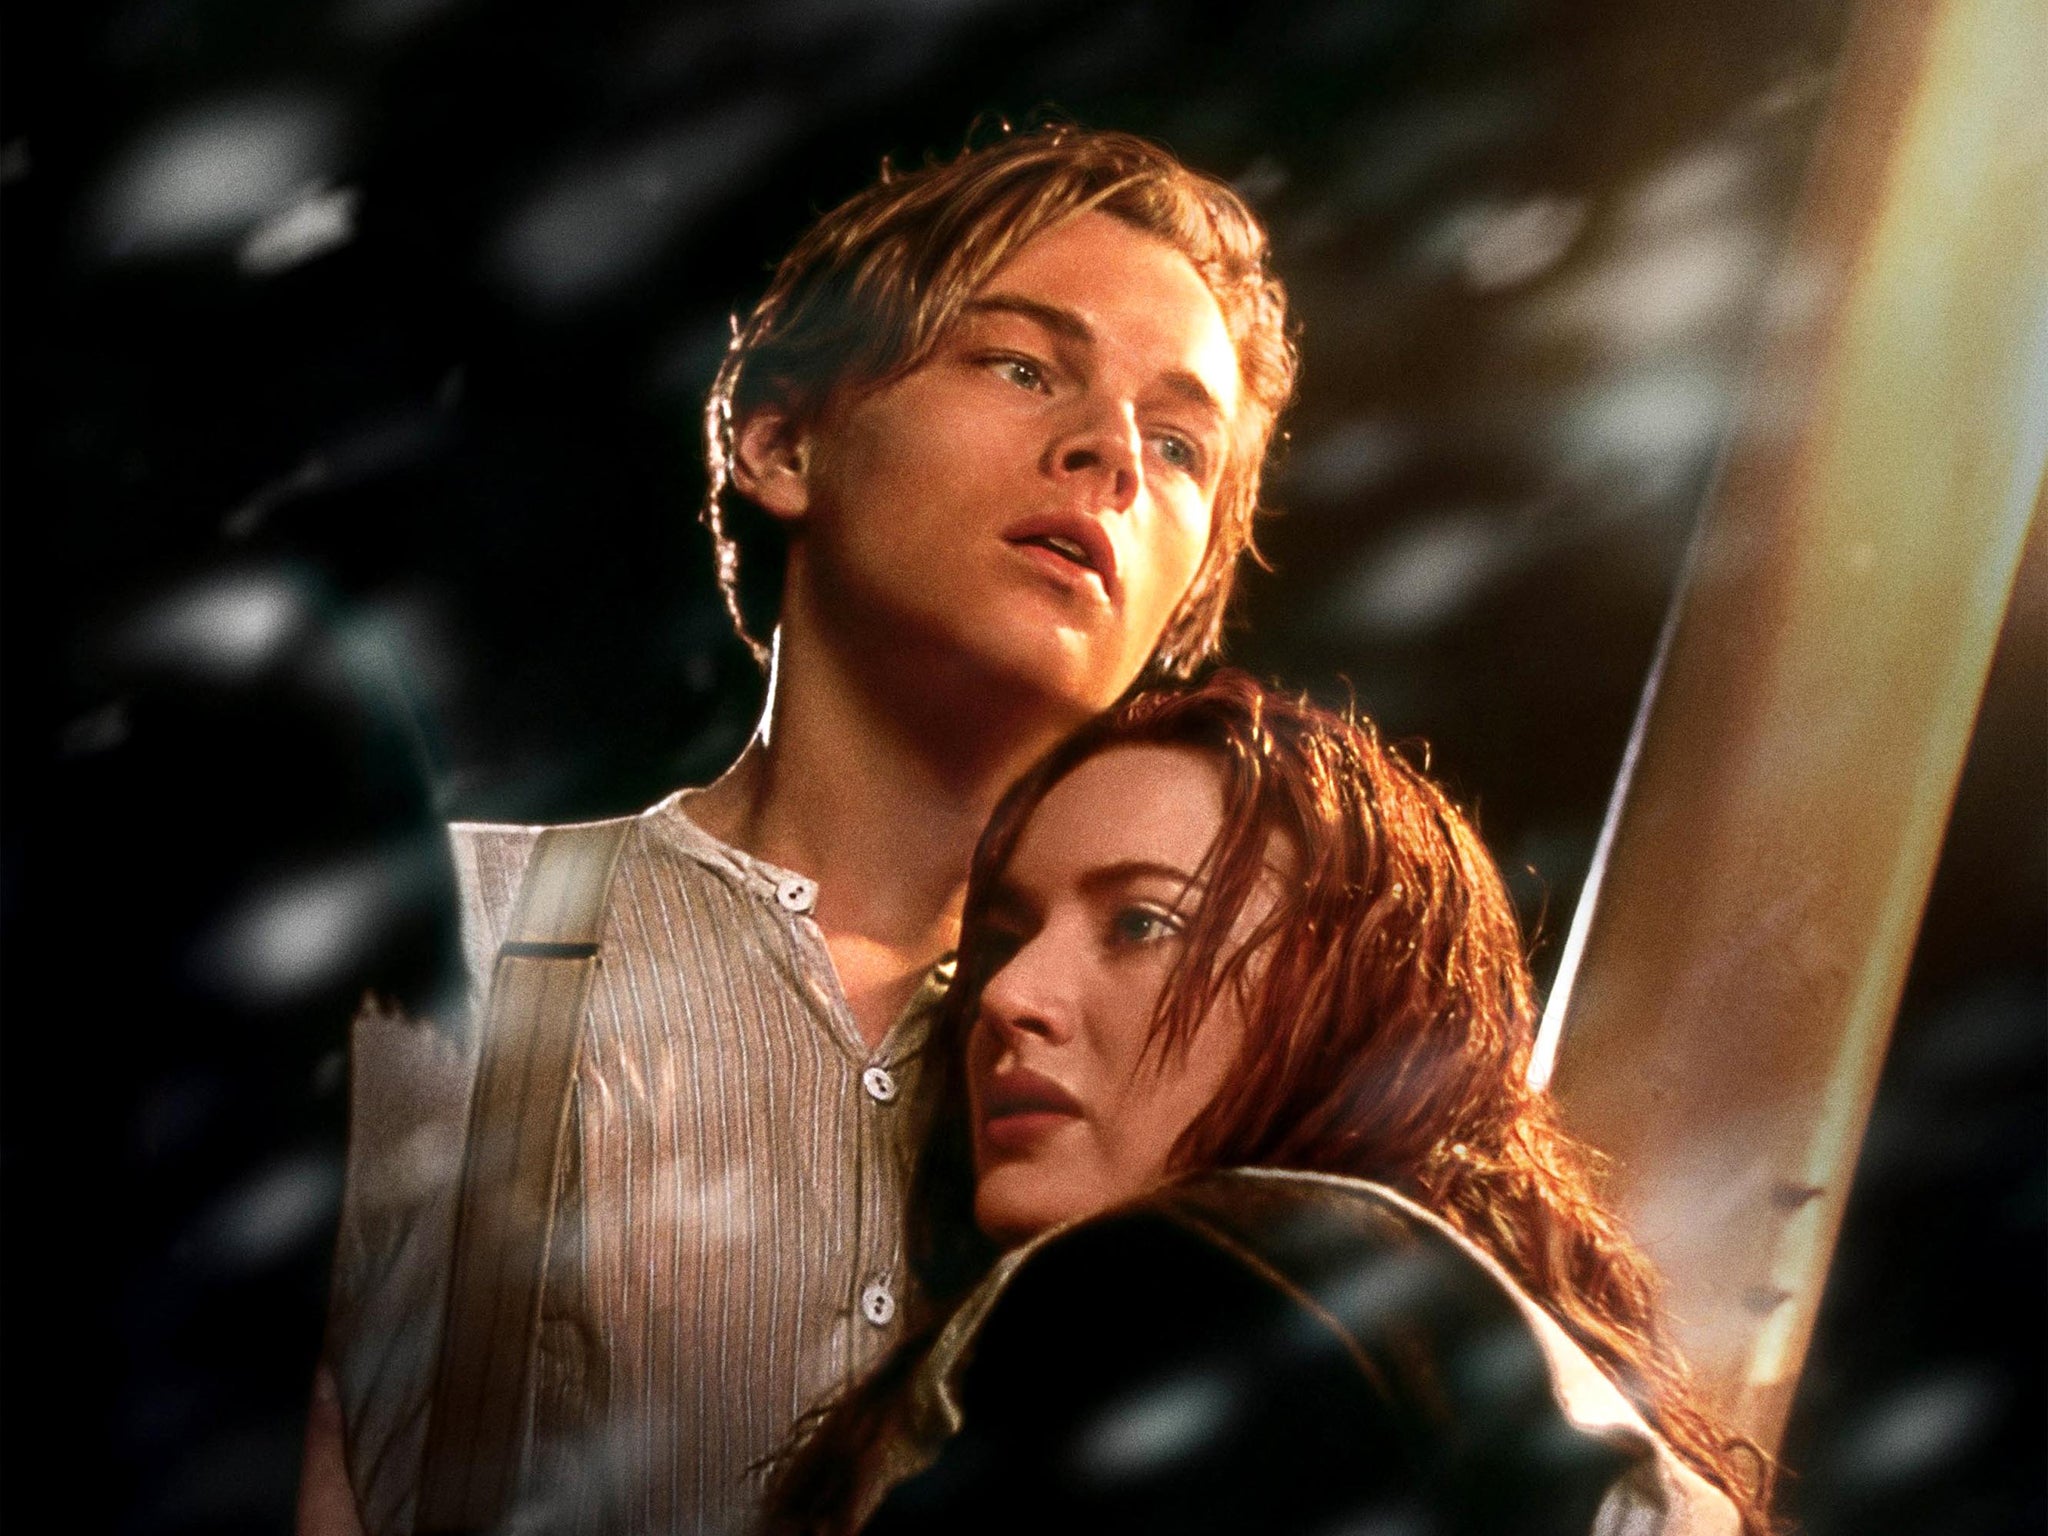 Leonardo DiCaprio and Kate Winslet in 'Titanic’ in 1997